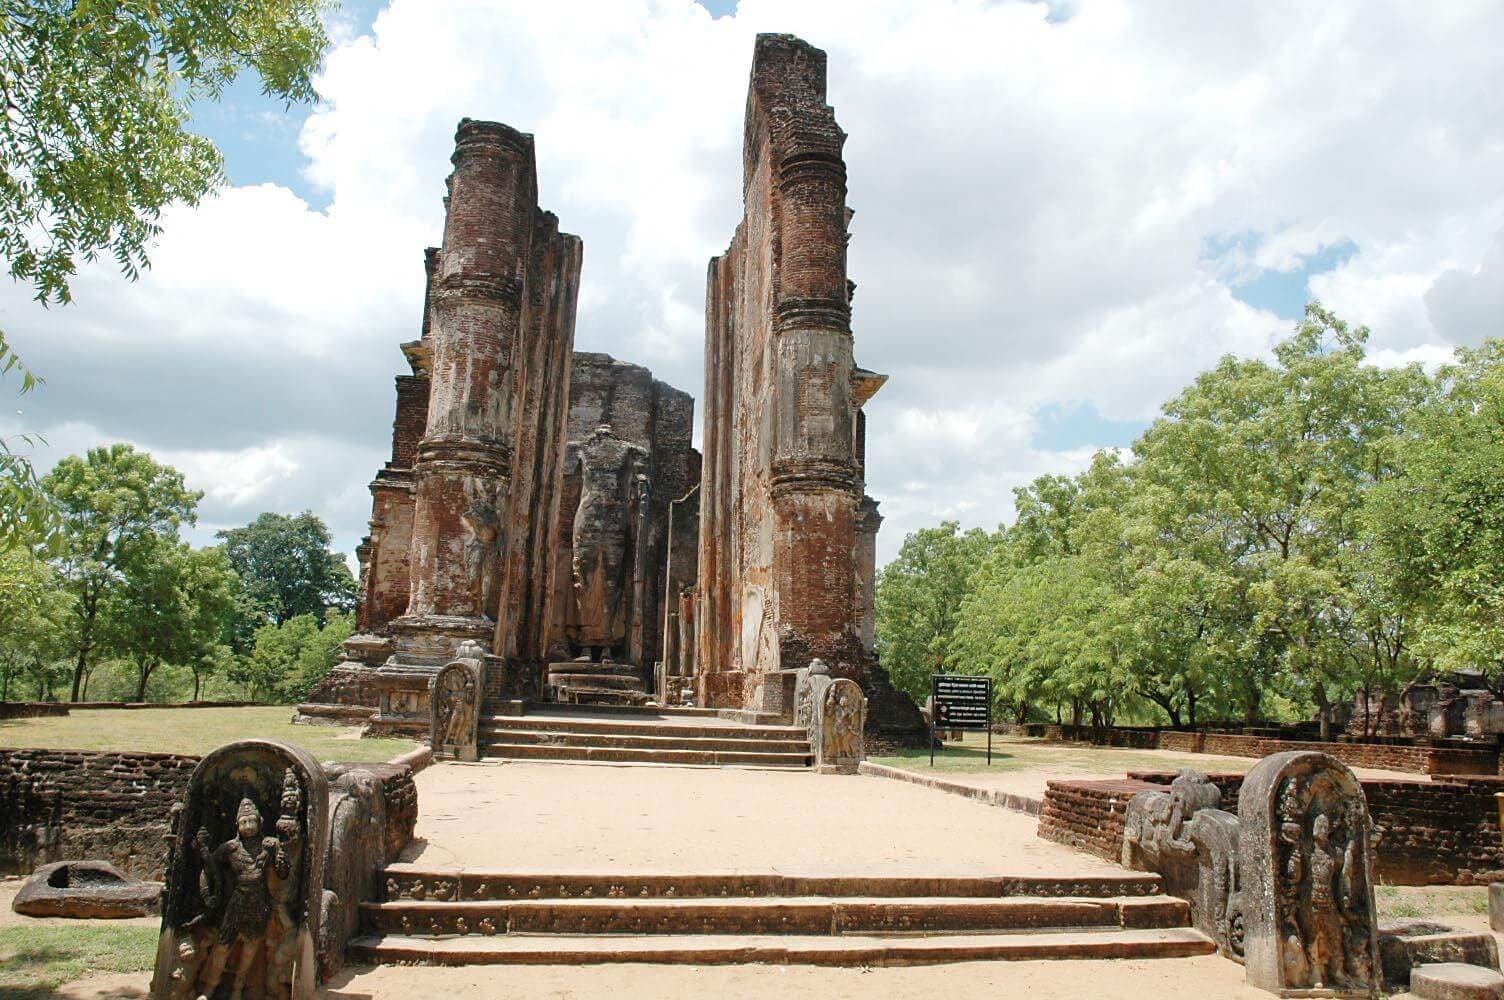 Ein Foto von Thiwanka Image House 'Thiwanka Pilima Geya' im alten Königreich Polonnaruwa Sri Lanka